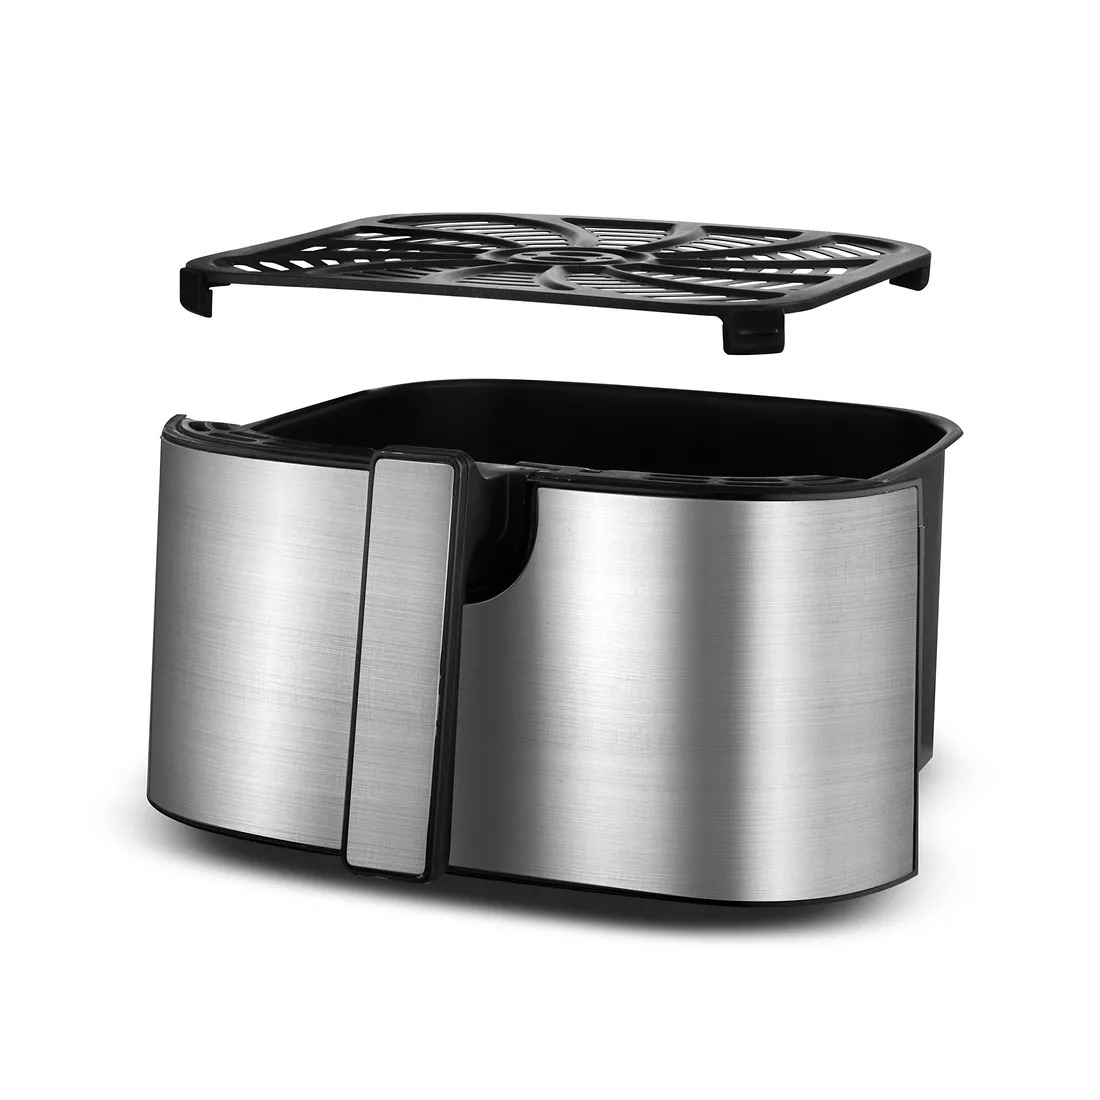  Gourmia Air Fryer Black (8 Quart) : Home & Kitchen